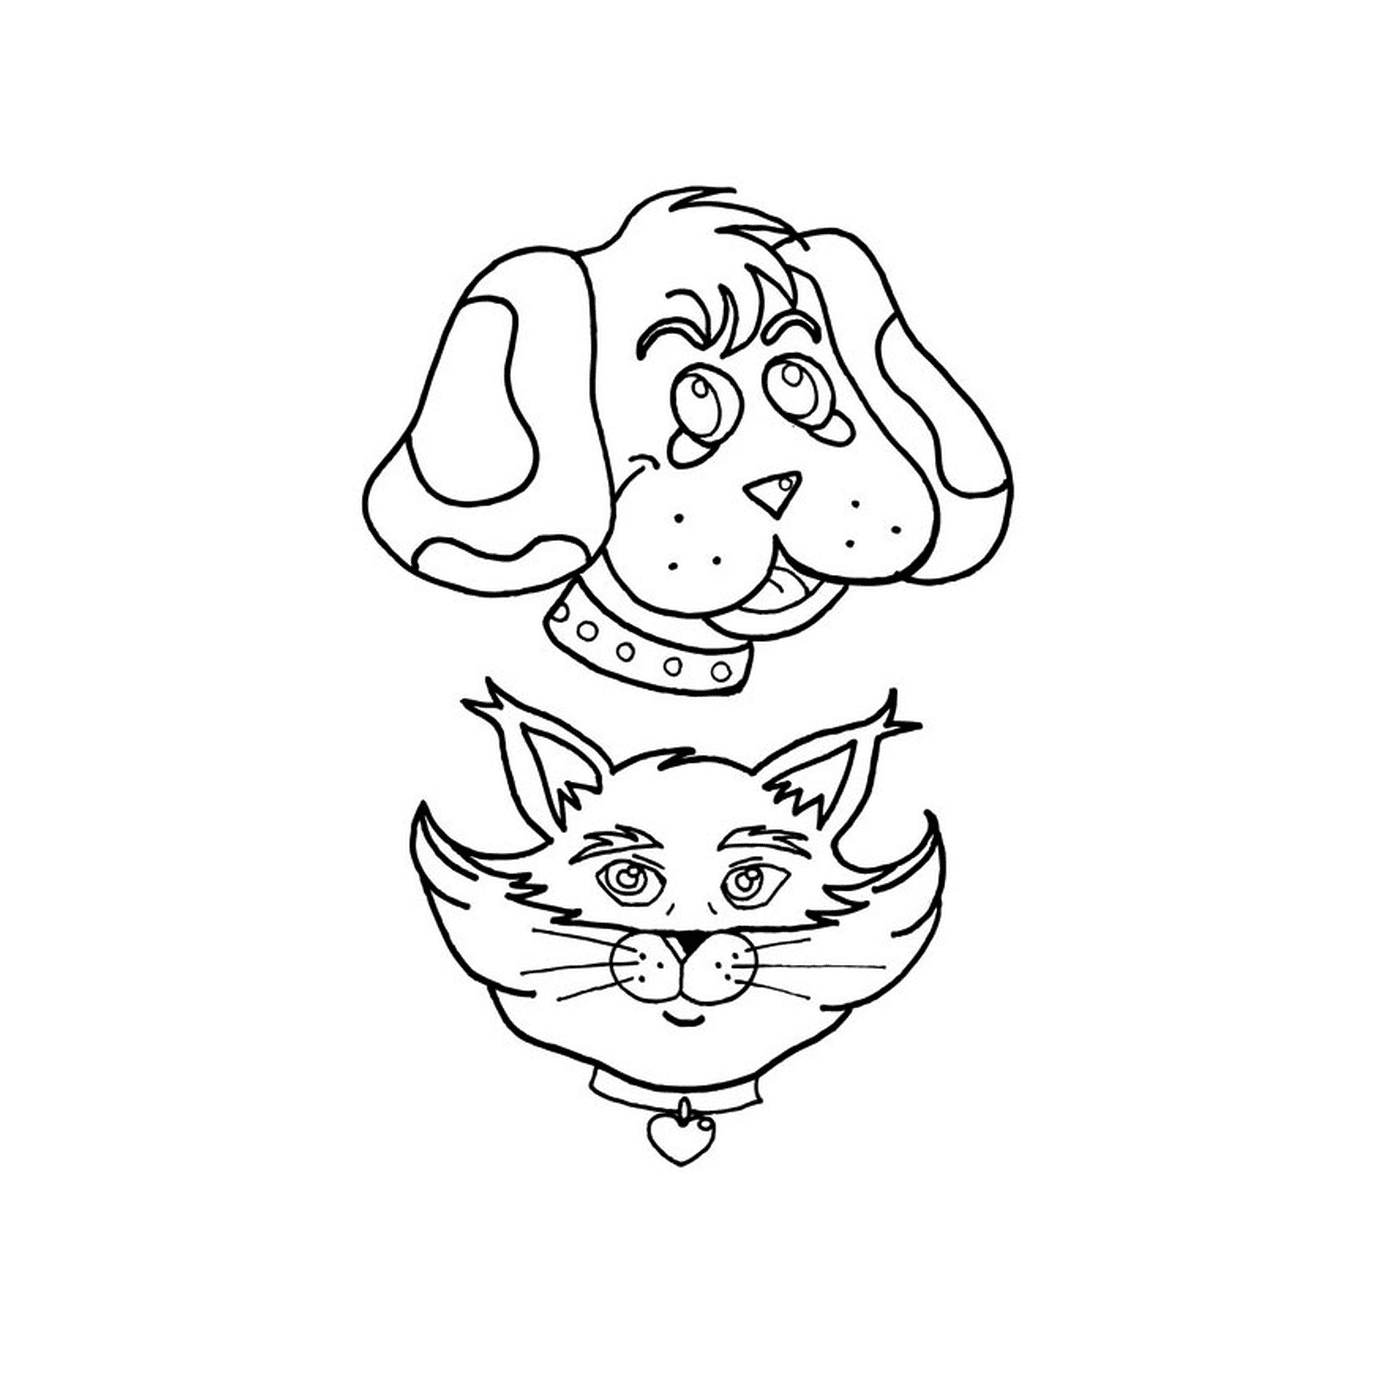   Un chien et un chat dessinés ensemble 